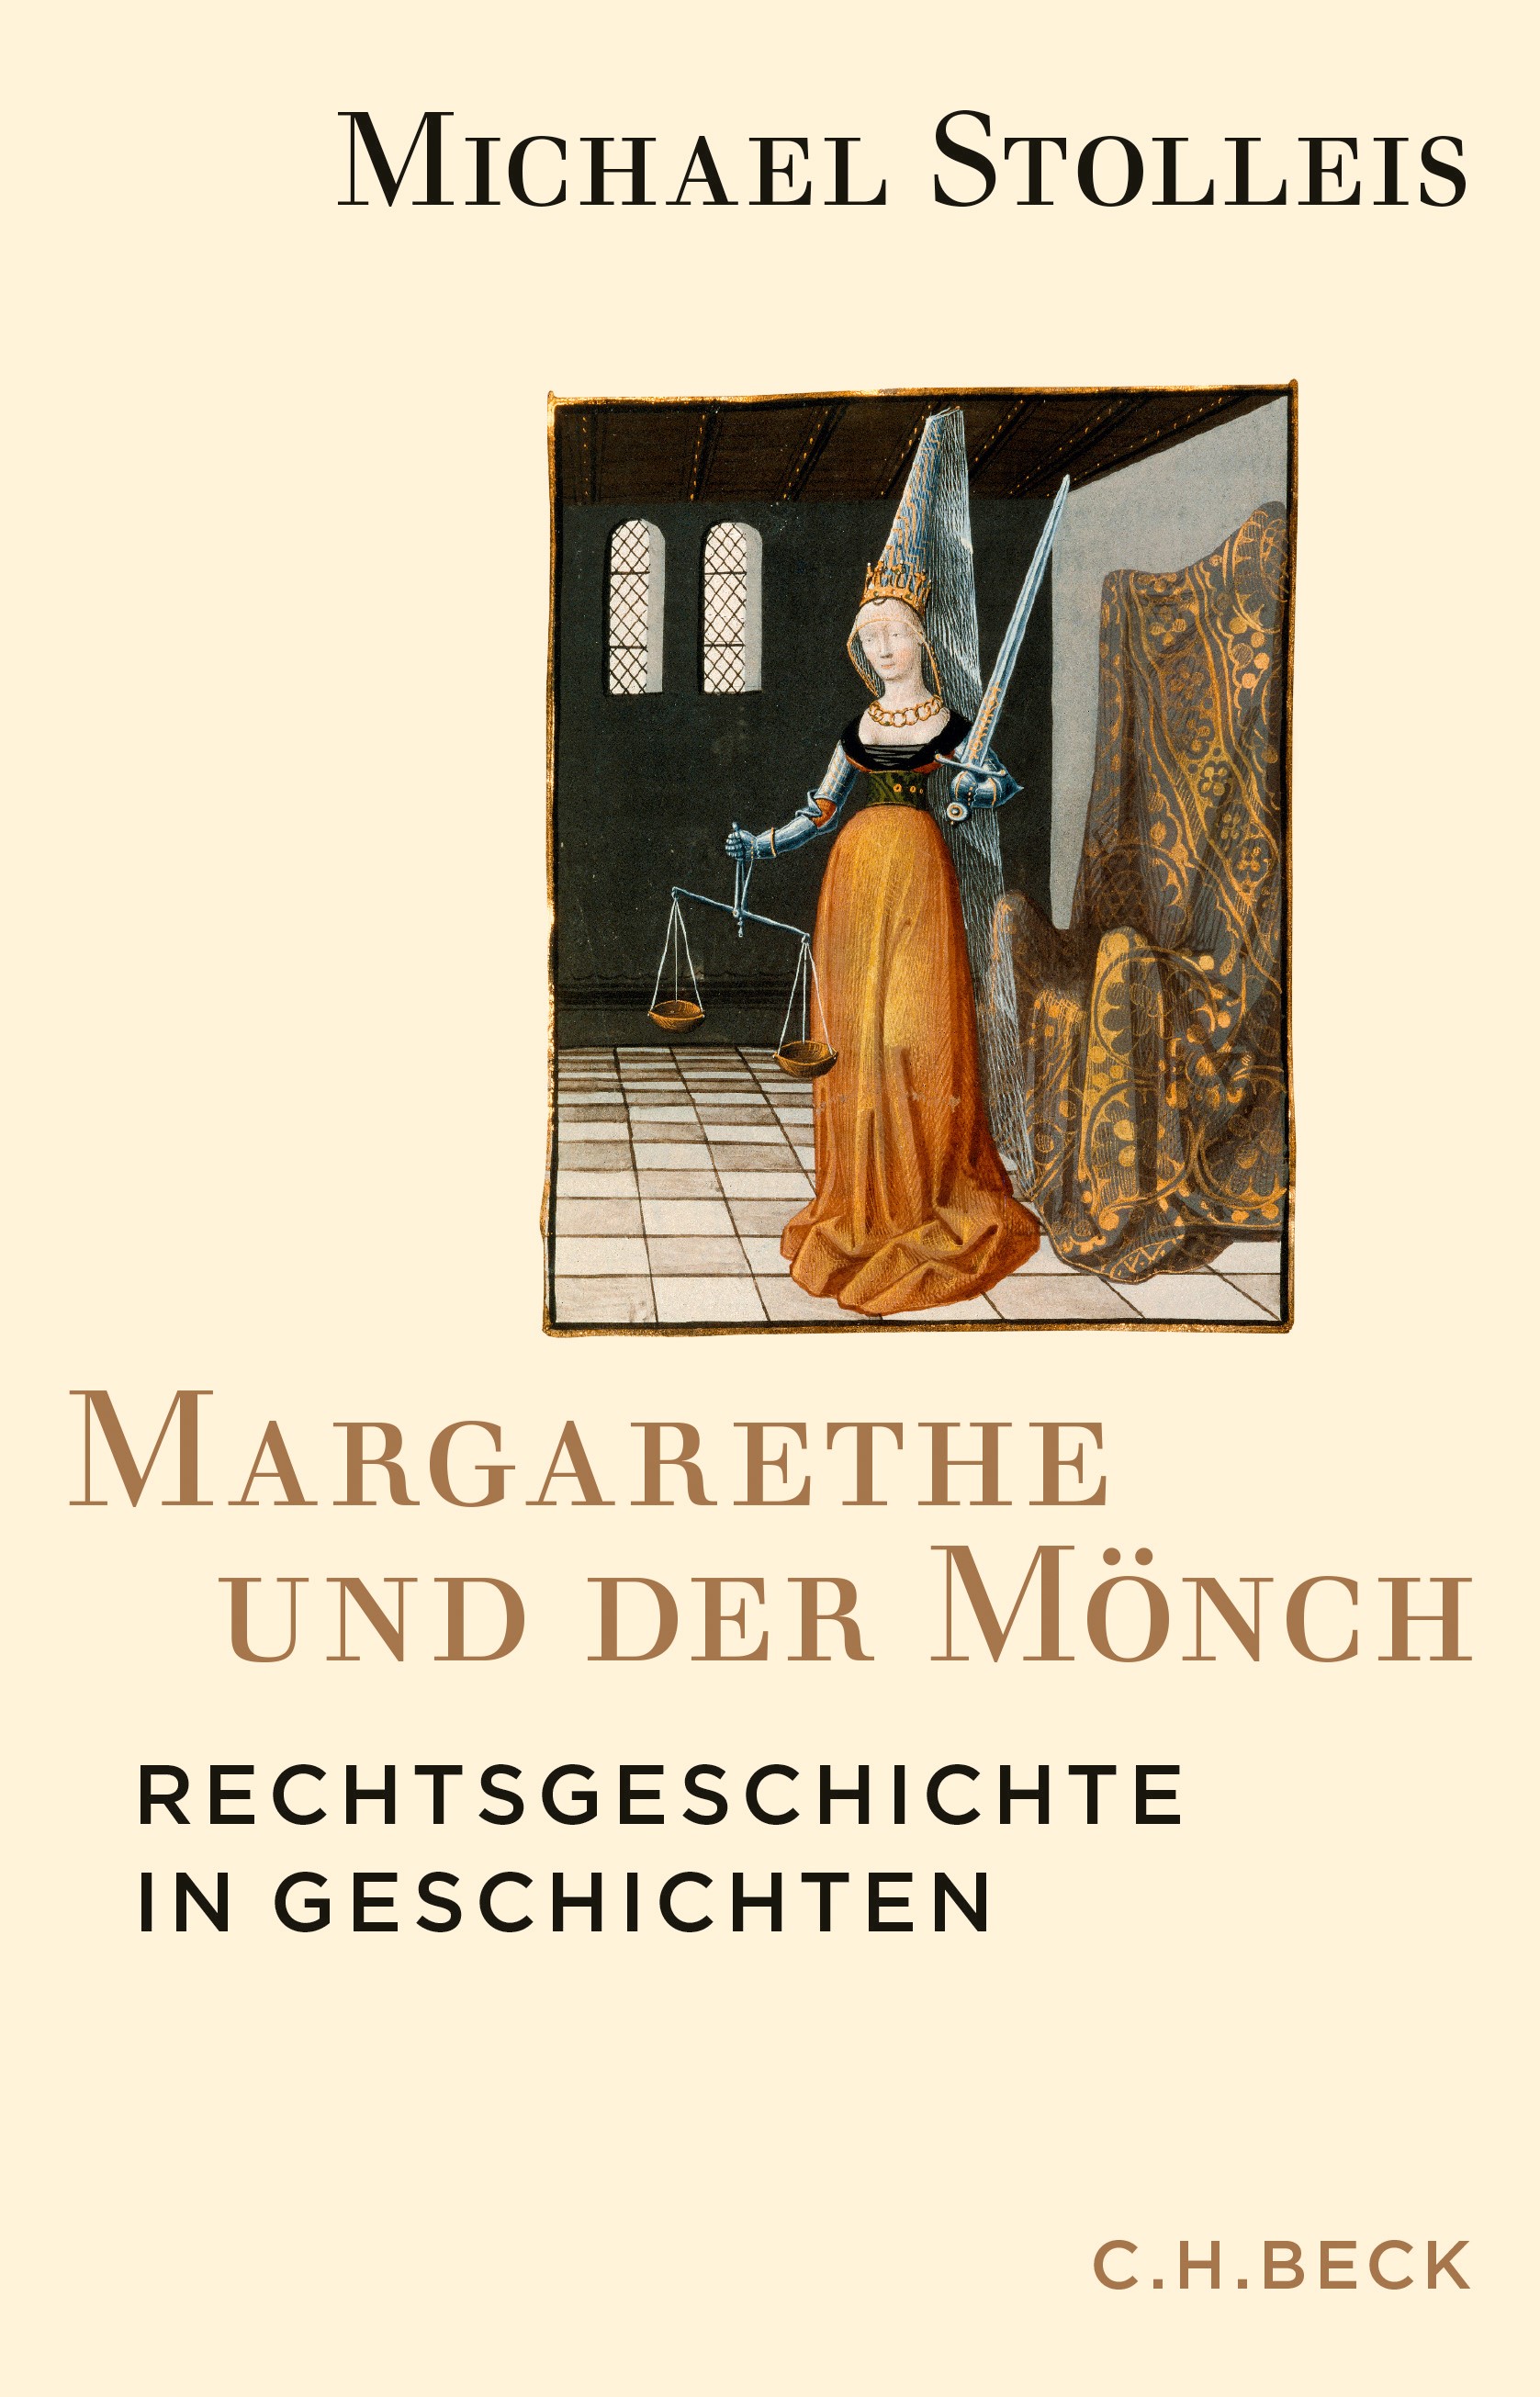 Cover: Stolleis, Michael, Margarethe und der Mönch